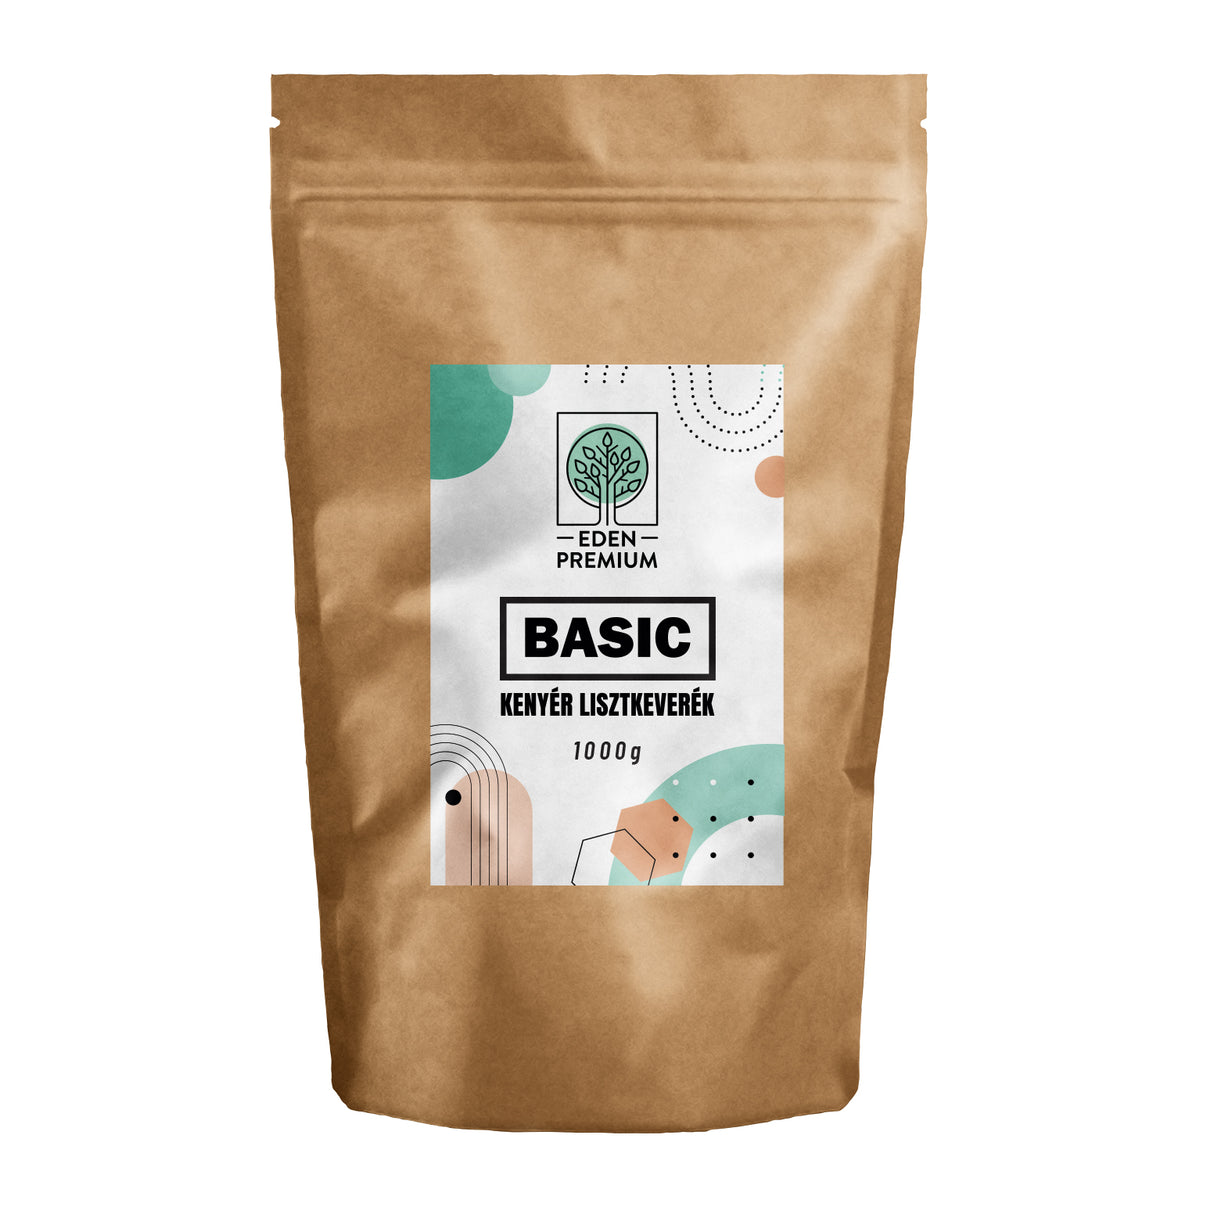 Basic lisztkeverék 1000g | Eden Premium